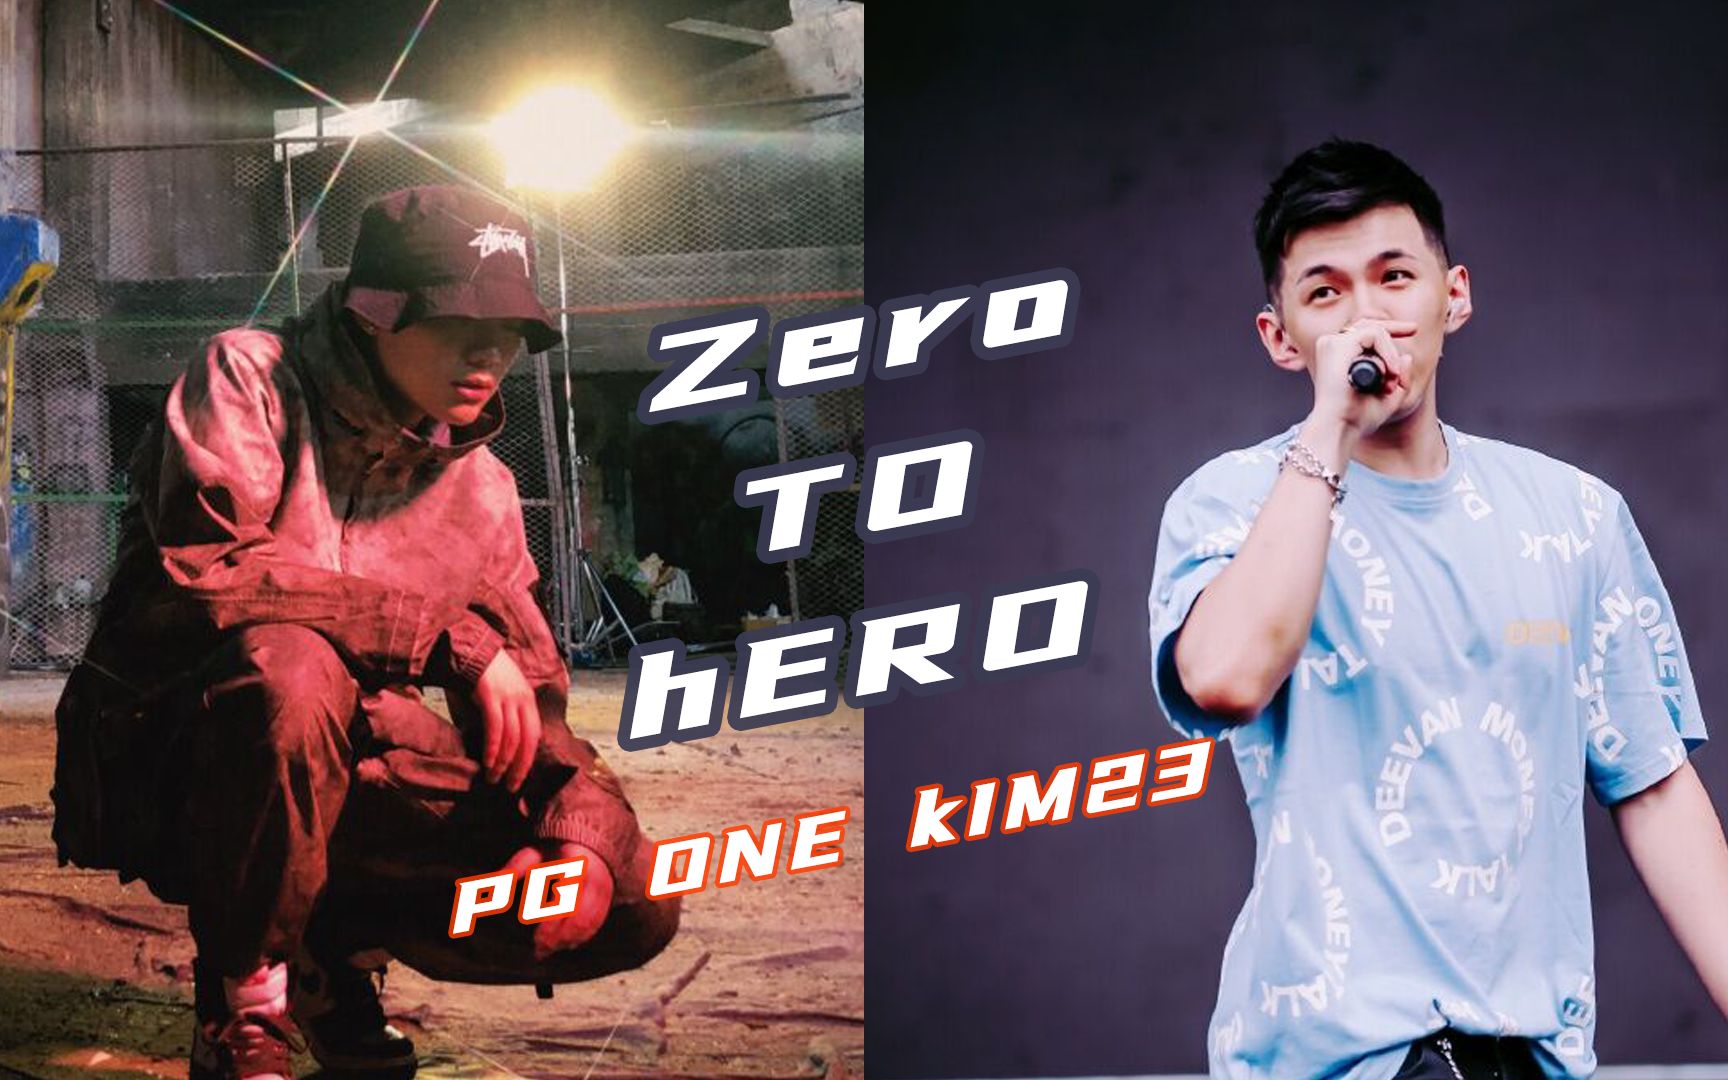 PG ONE新专辑曲目之一《Zero to Hero》Feat.kim23